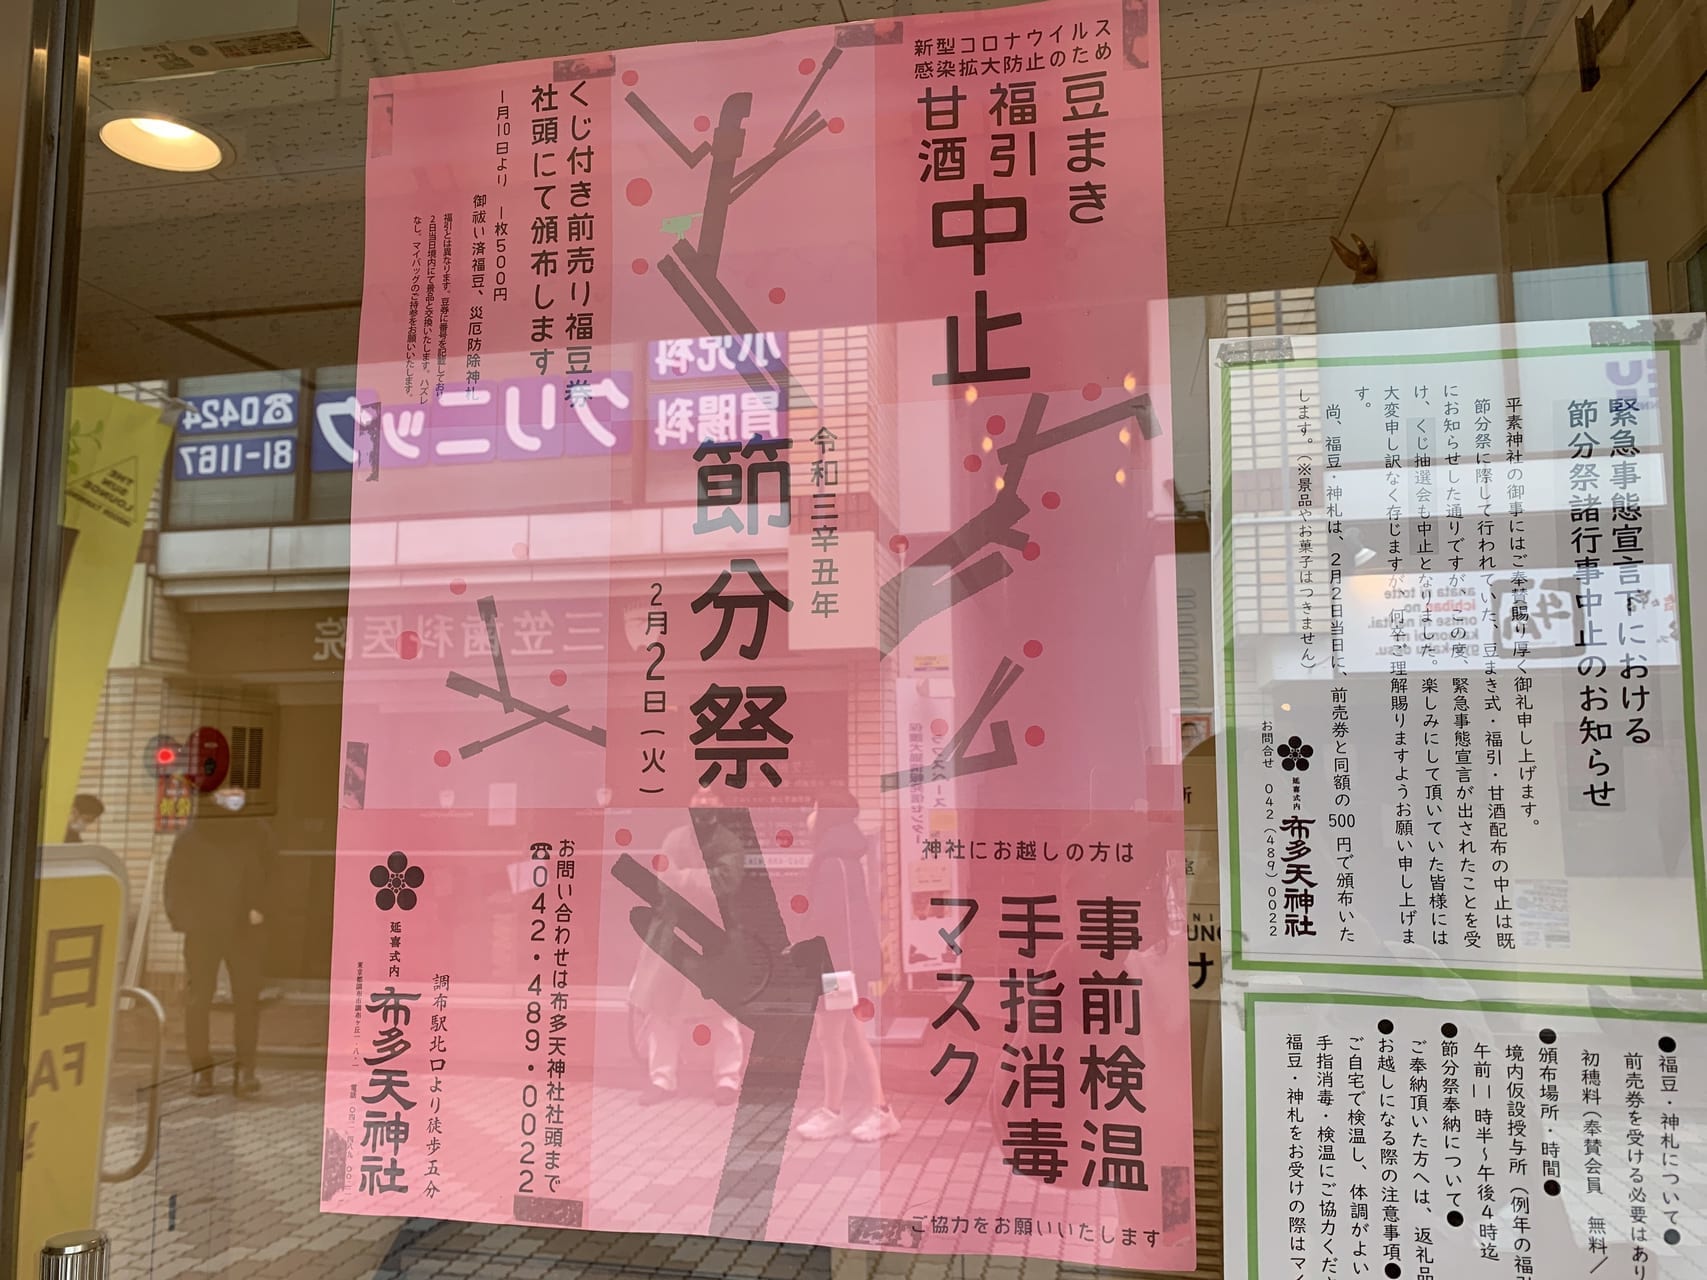 布田天神社の節分祭は中止となります。